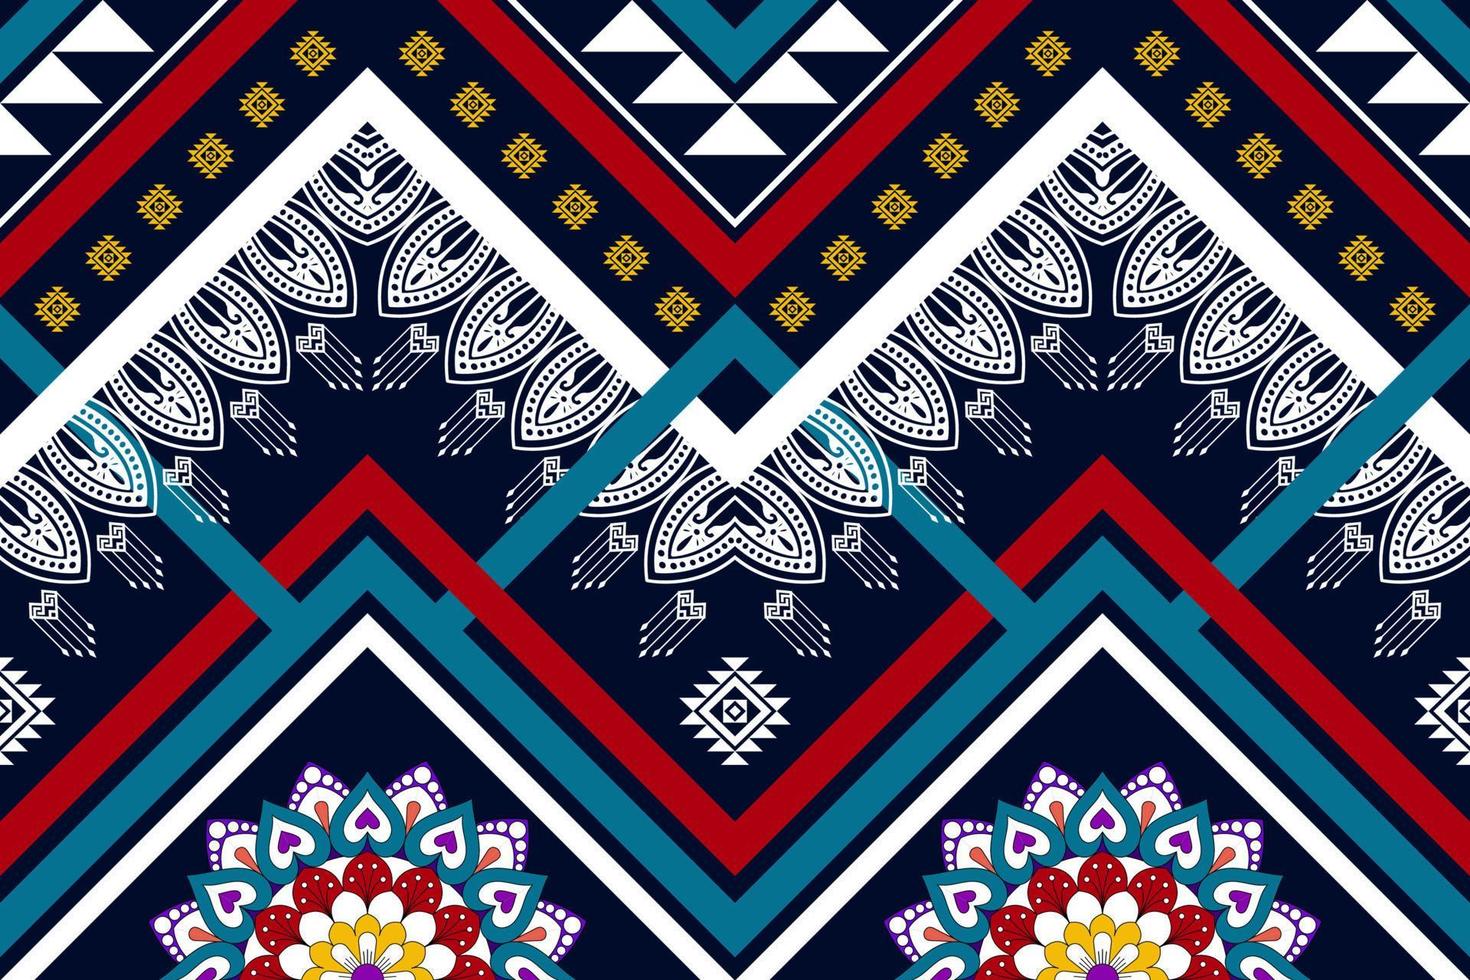 geometrisches abstraktes ethnisches nahtloses Musterdesign. aztekischer Stoff Teppich Mandala Ornamente Textildekorationen Tapete. tribal boho einheimisches motiv türkei traditioneller stickereivektorhintergrund vektor